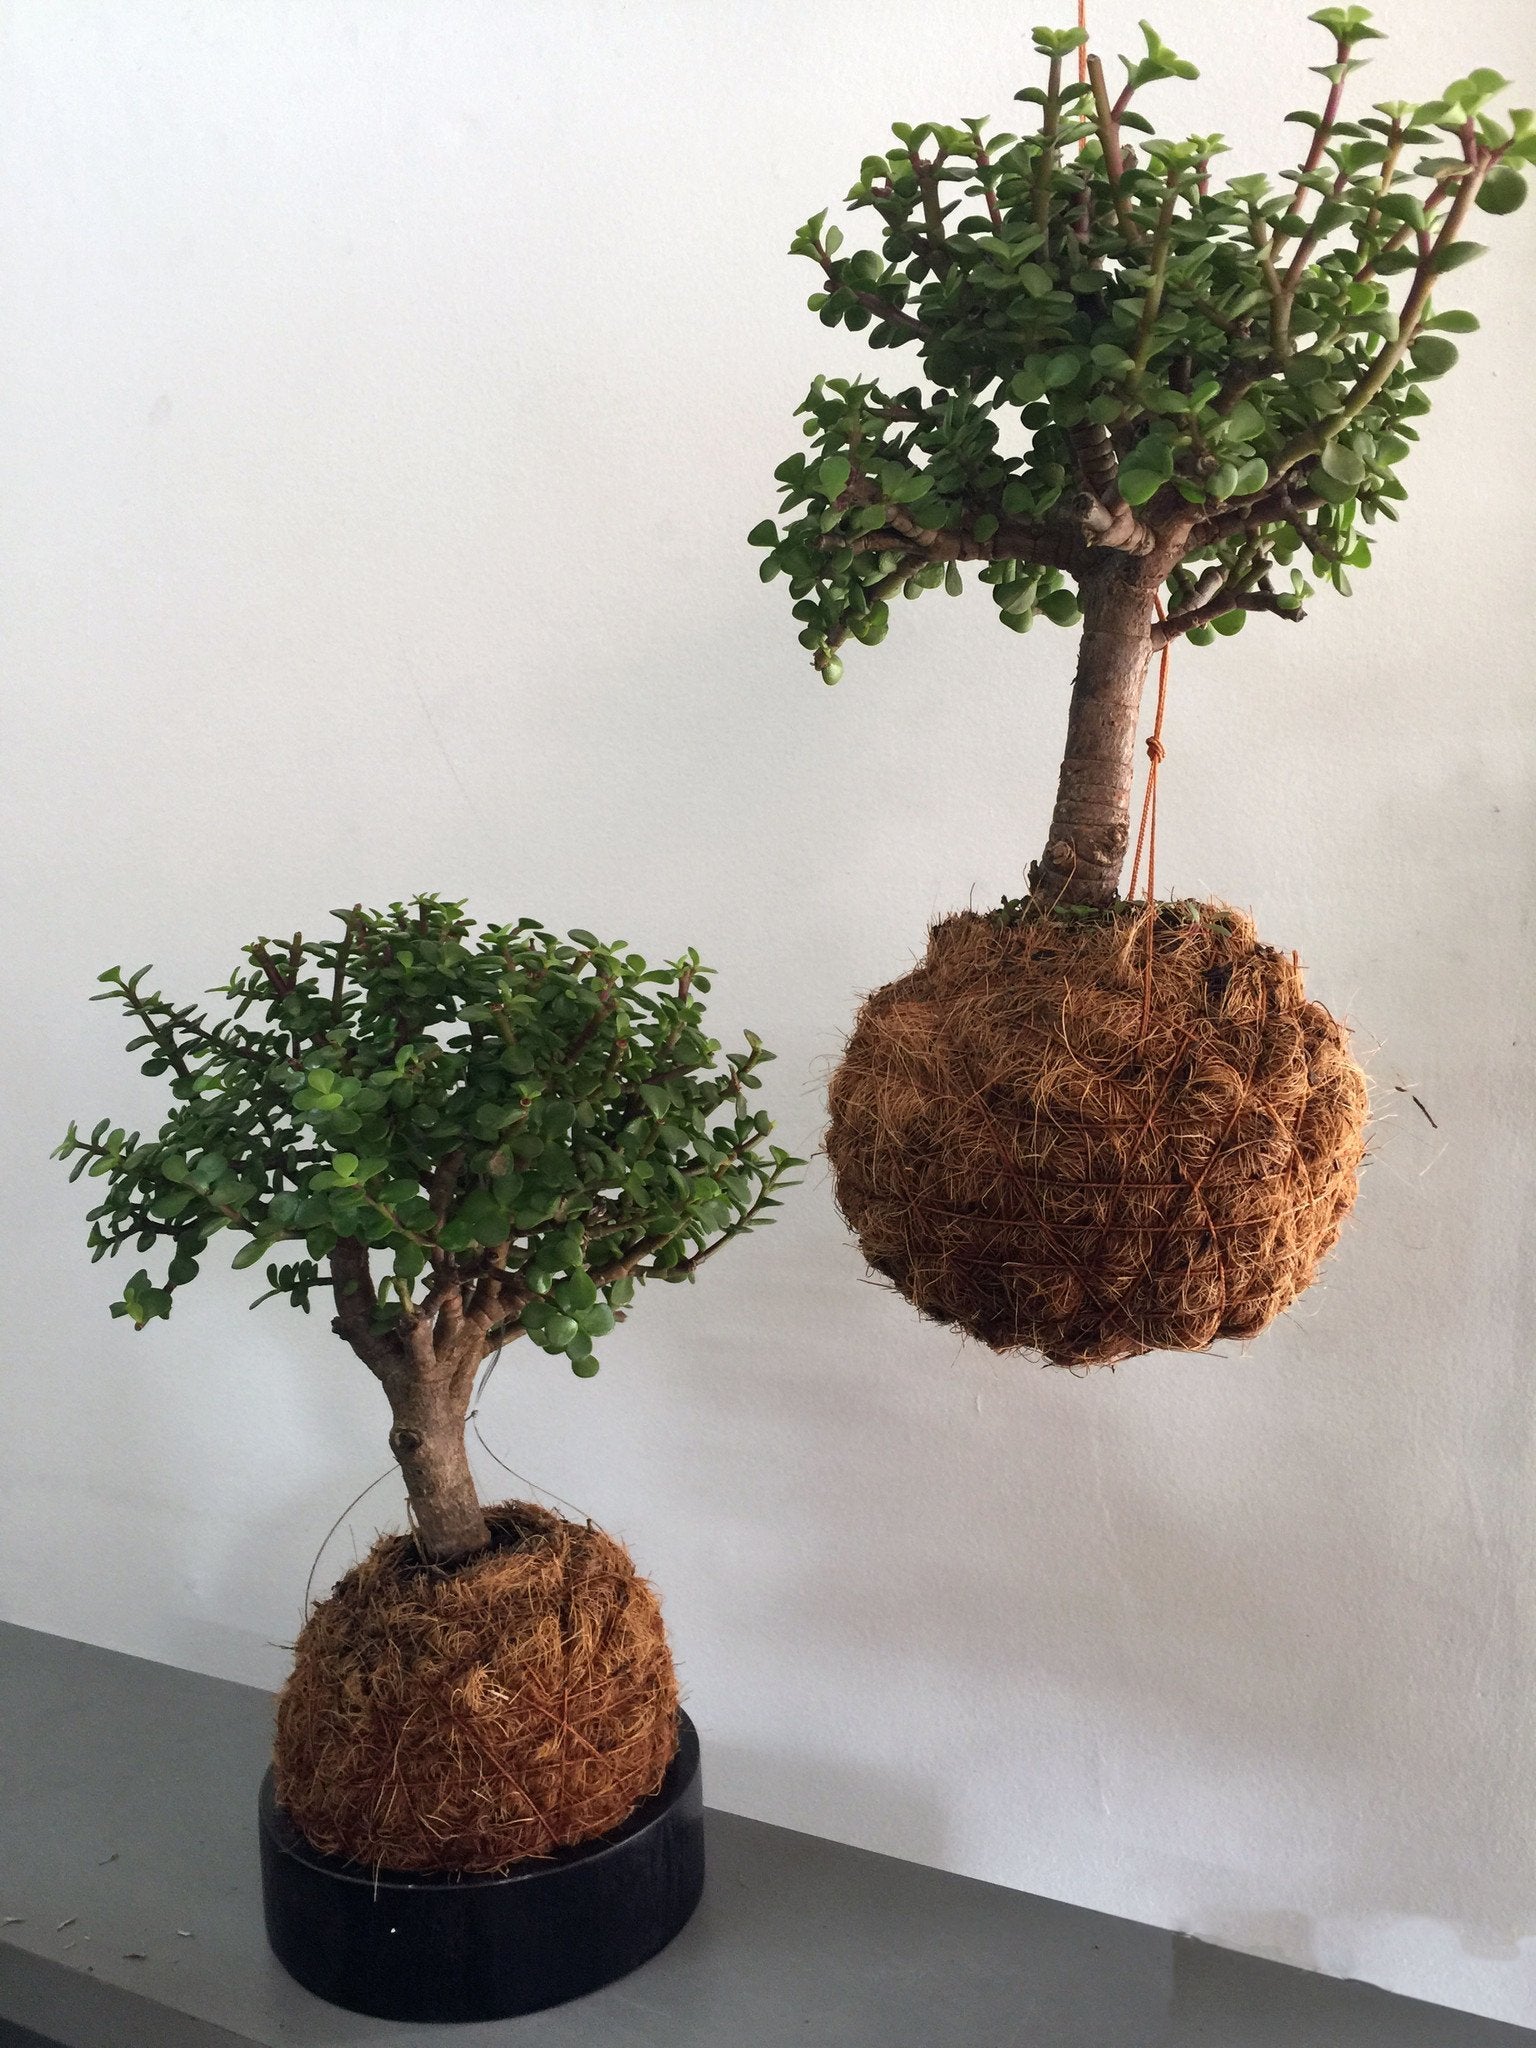 Cuidados básicos de bonsai "Principito"